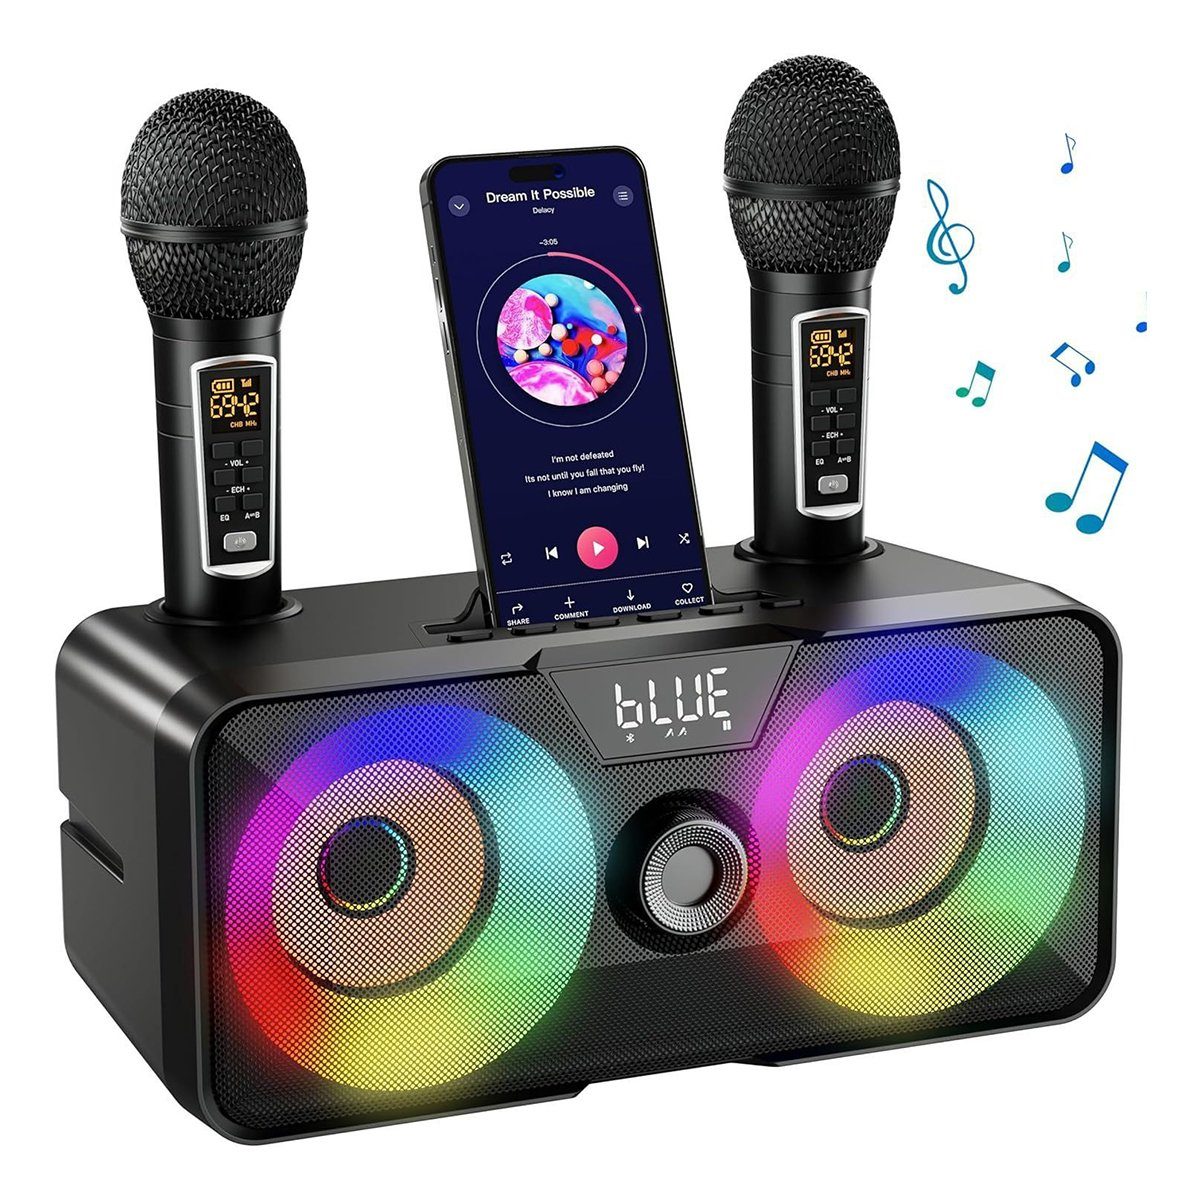 DOPWii Tragbare Karaoke-Maschine, Bluetooth-Lautsprecher Karaoke-Maschine (mit 2 kabellosen Mikrofonen)